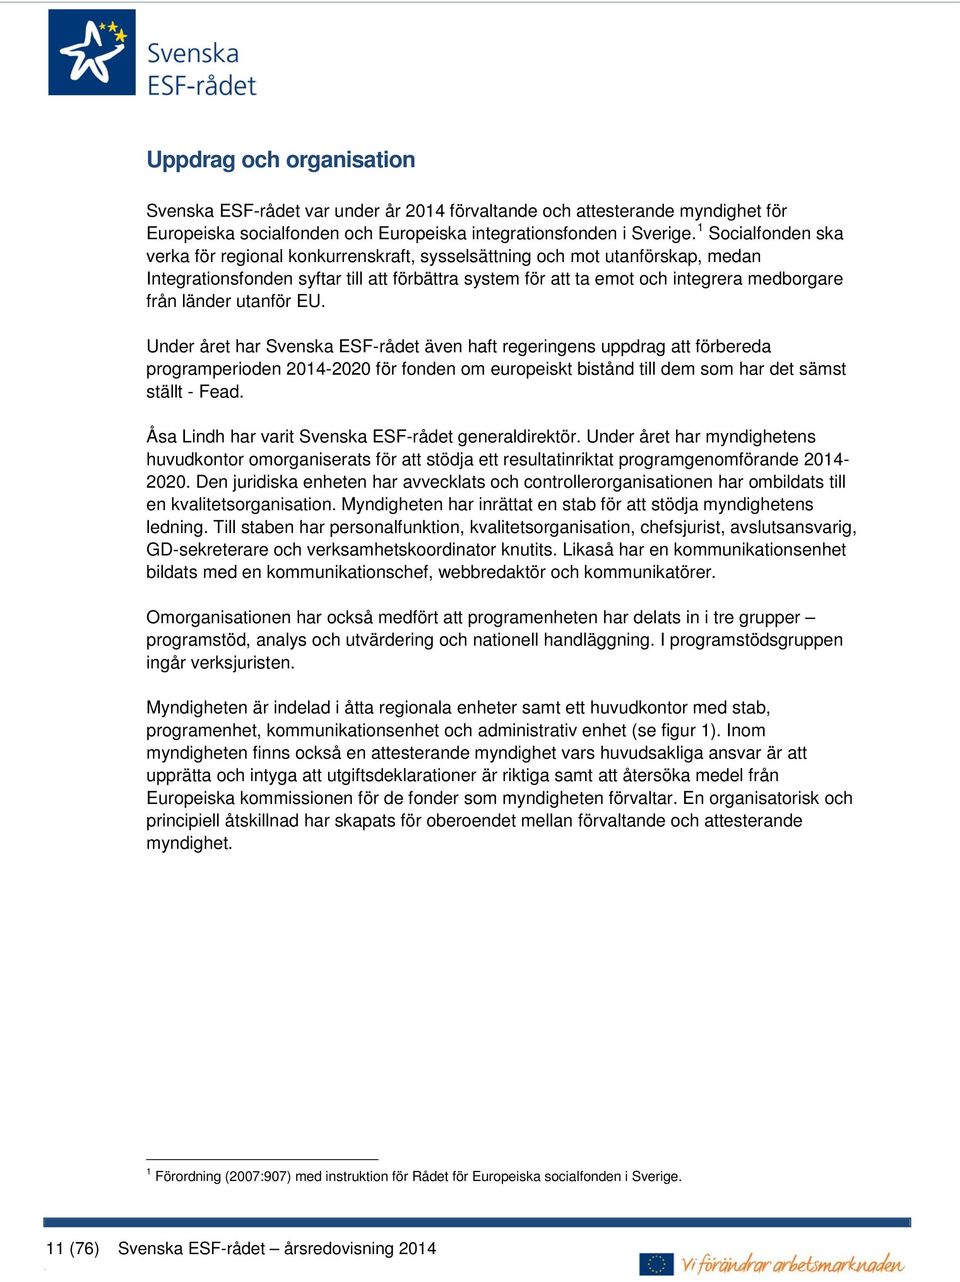 länder utanför EU. Under året har Svenska ESF-rådet även haft regeringens uppdrag att förbereda programperioden 2014-2020 för fonden om europeiskt bistånd till dem som har det sämst ställt - Fead.